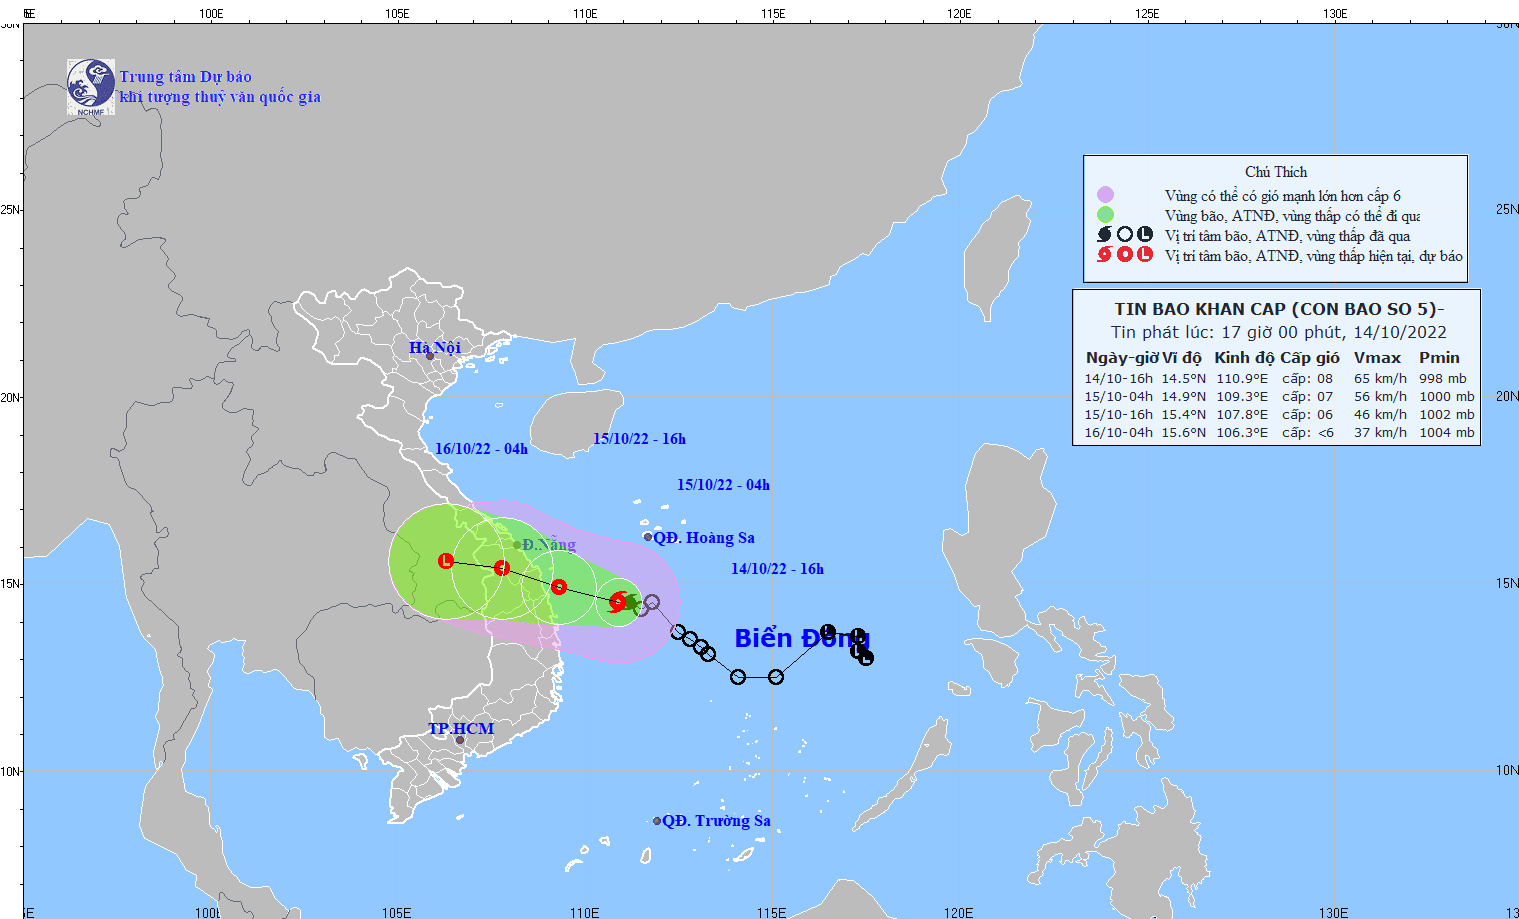 熱帶低氣壓轉強形成桑卡颱風